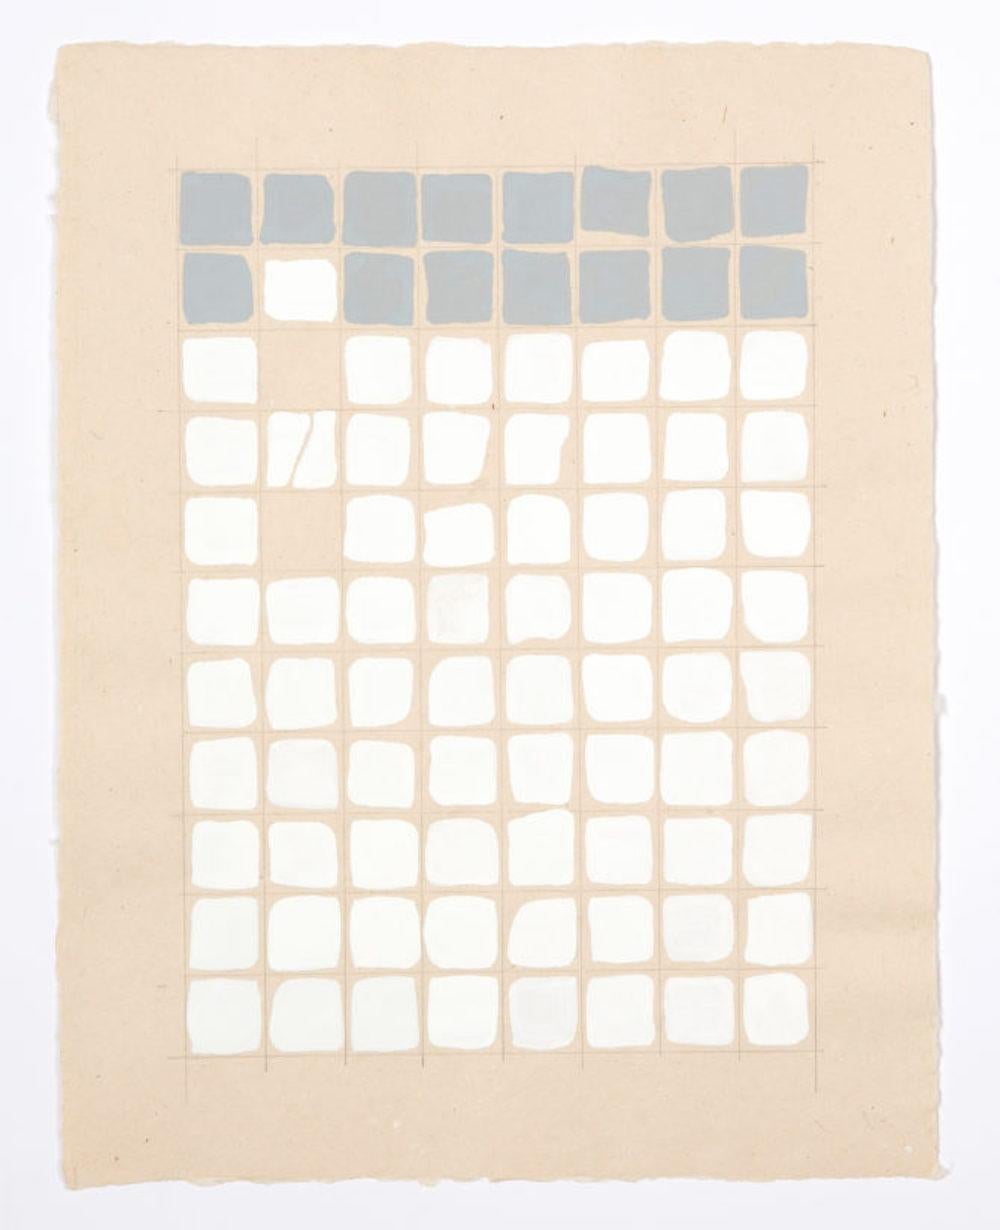 Combinaisons de carrés, peinture géométrique abstraite, grille